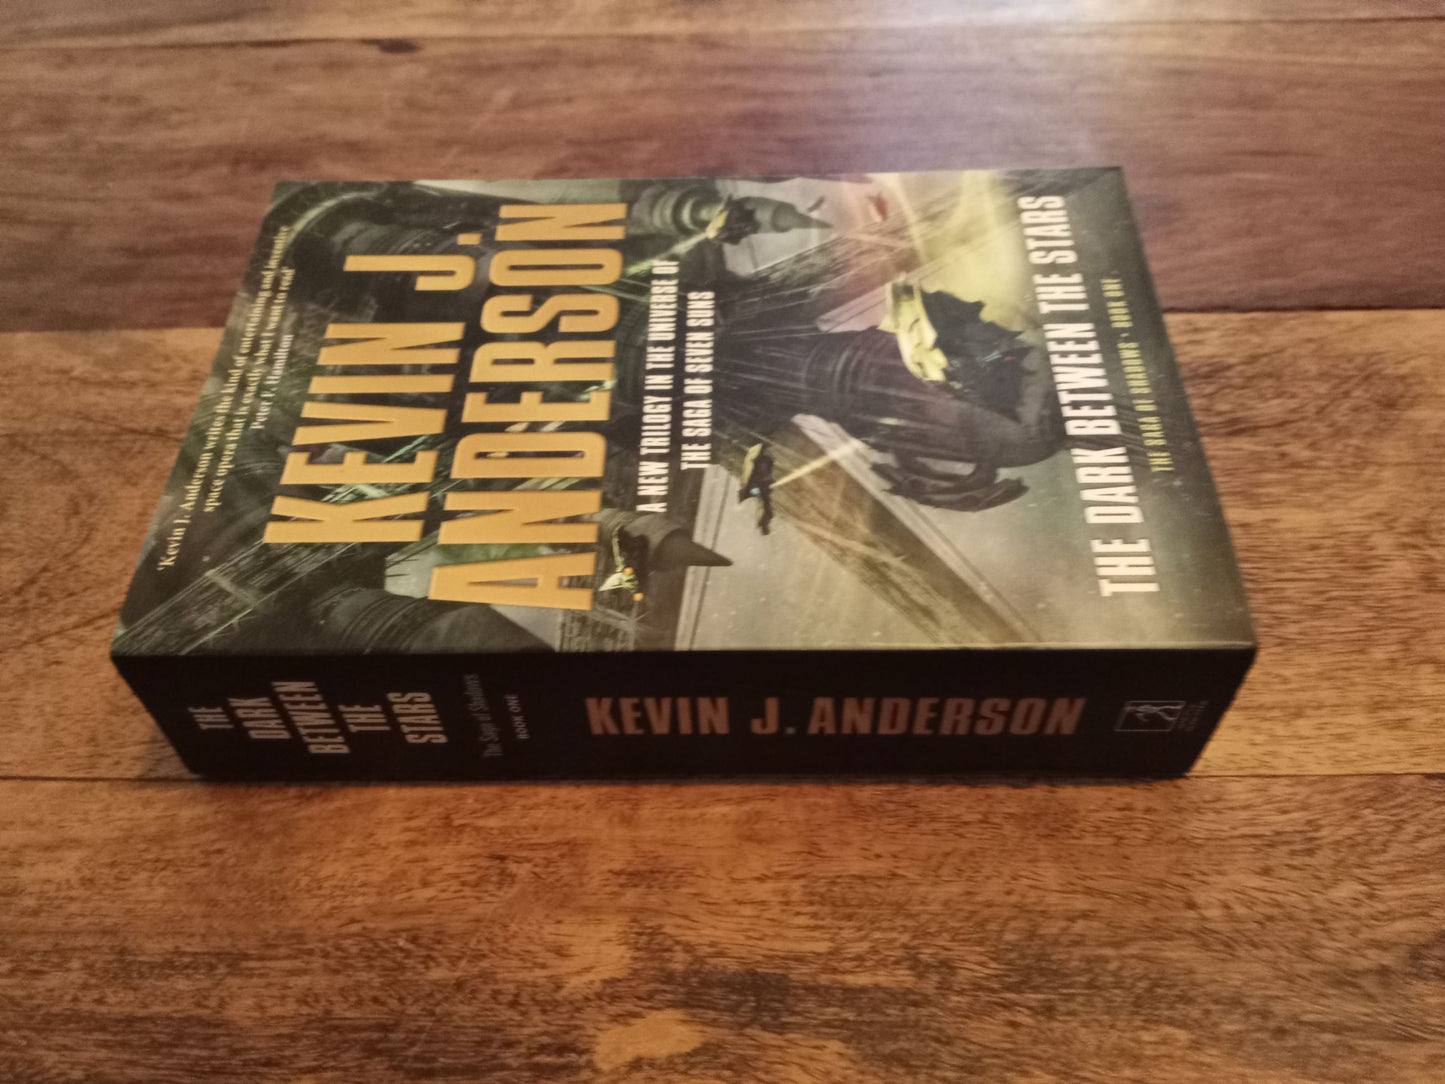 The Saga of Shadows 1-2-3 Kevin J. Anderson